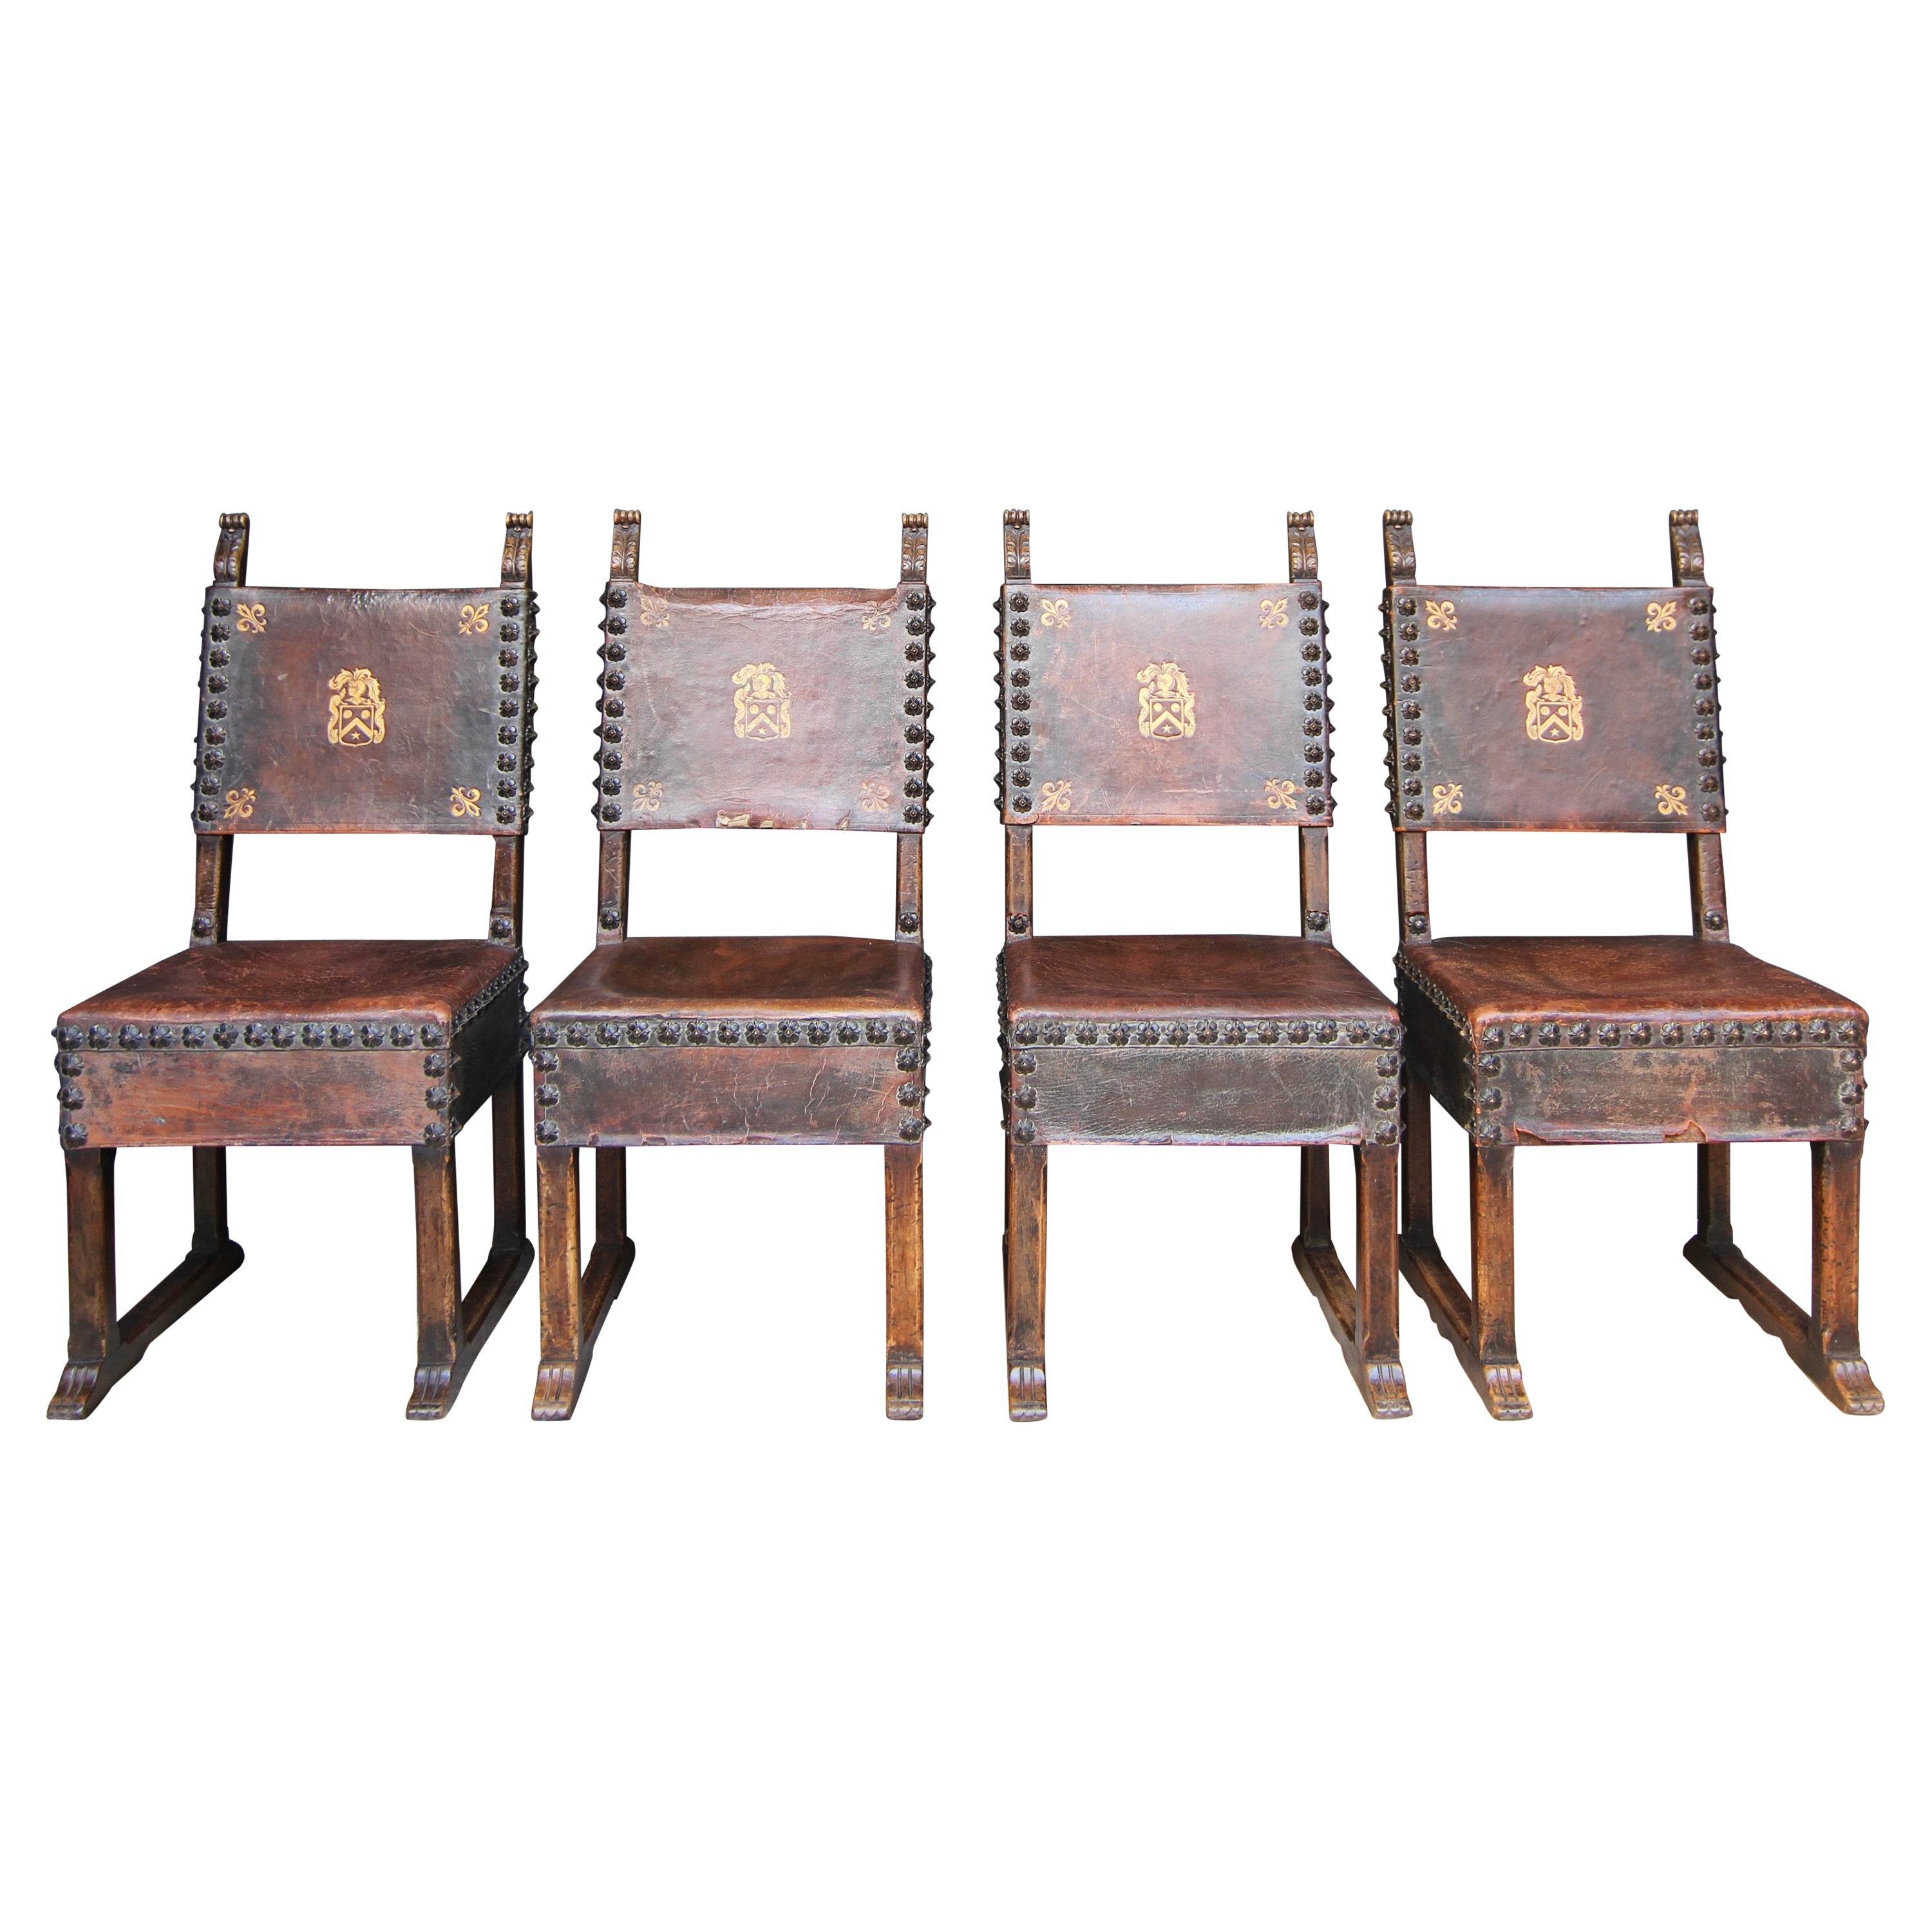 Ensemble de 4 chaises en noyer et cuir de style Renaissance par Krieger